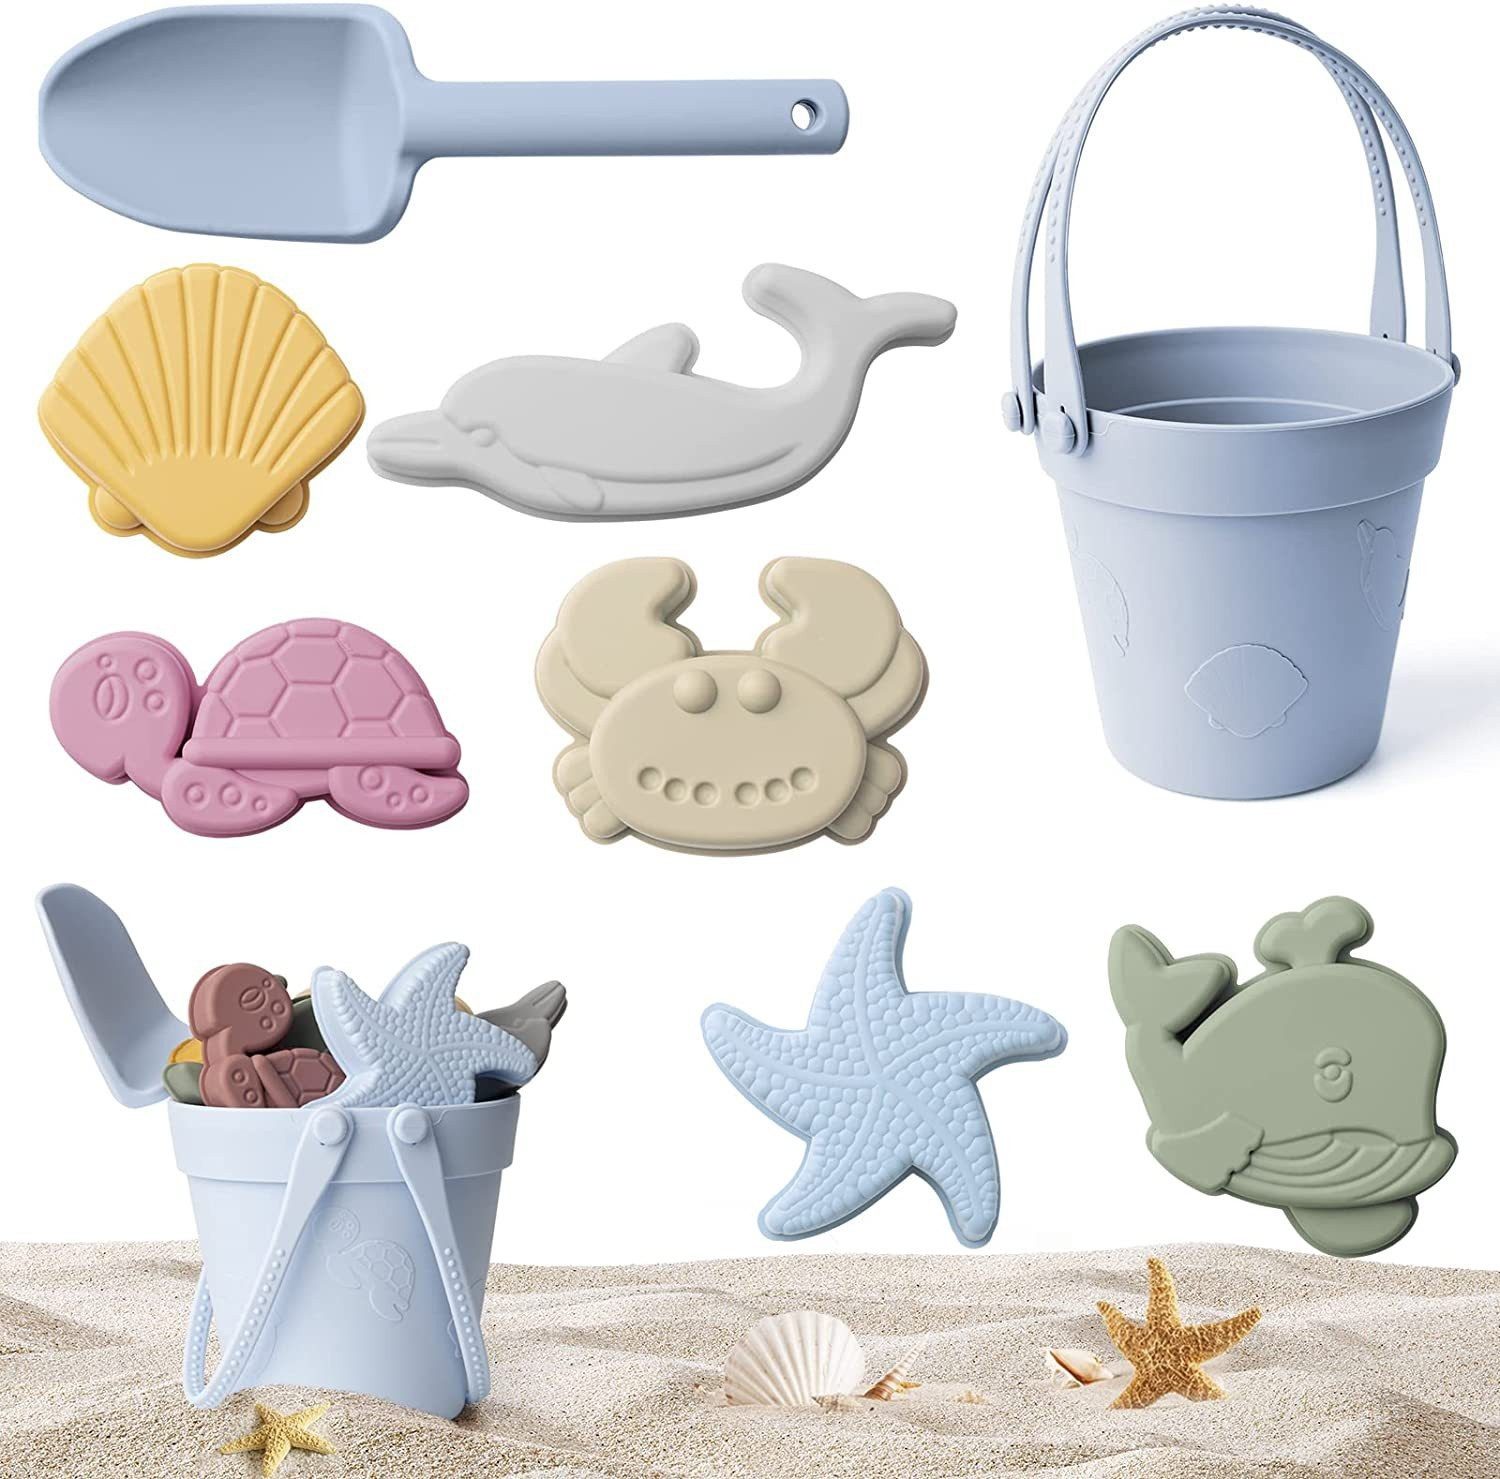 Gillette Venus Sandeimer Planschendes Eltern-Kind-Strandspielzeug für Kinder, (Sandkastenspielzeug für Kleinkinder, 9-tlg., Sandschaufelwerkzeug), 9-teiliges Strandspielzeugset aus Silikon mit Eimer